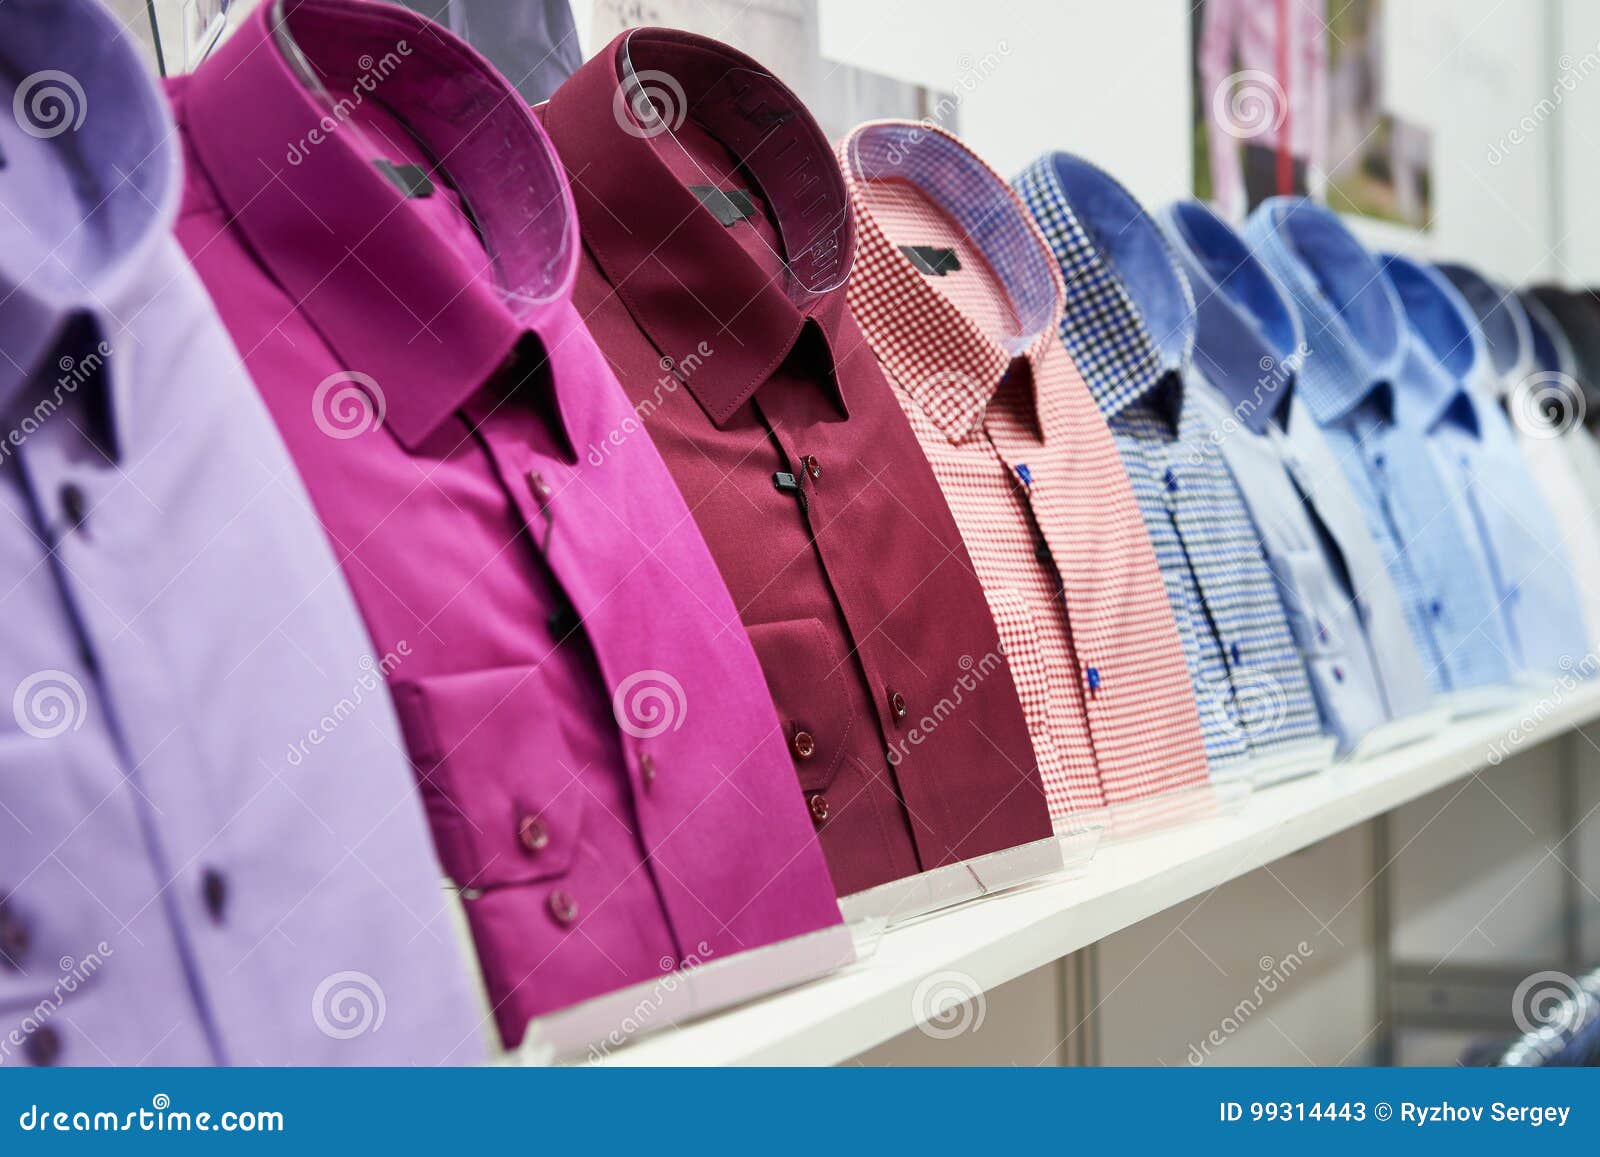 Camisas Del ` S De Los Hombres En Tienda De Ropa Imagen de archivo - Imagen hombres, camisas: 99314443